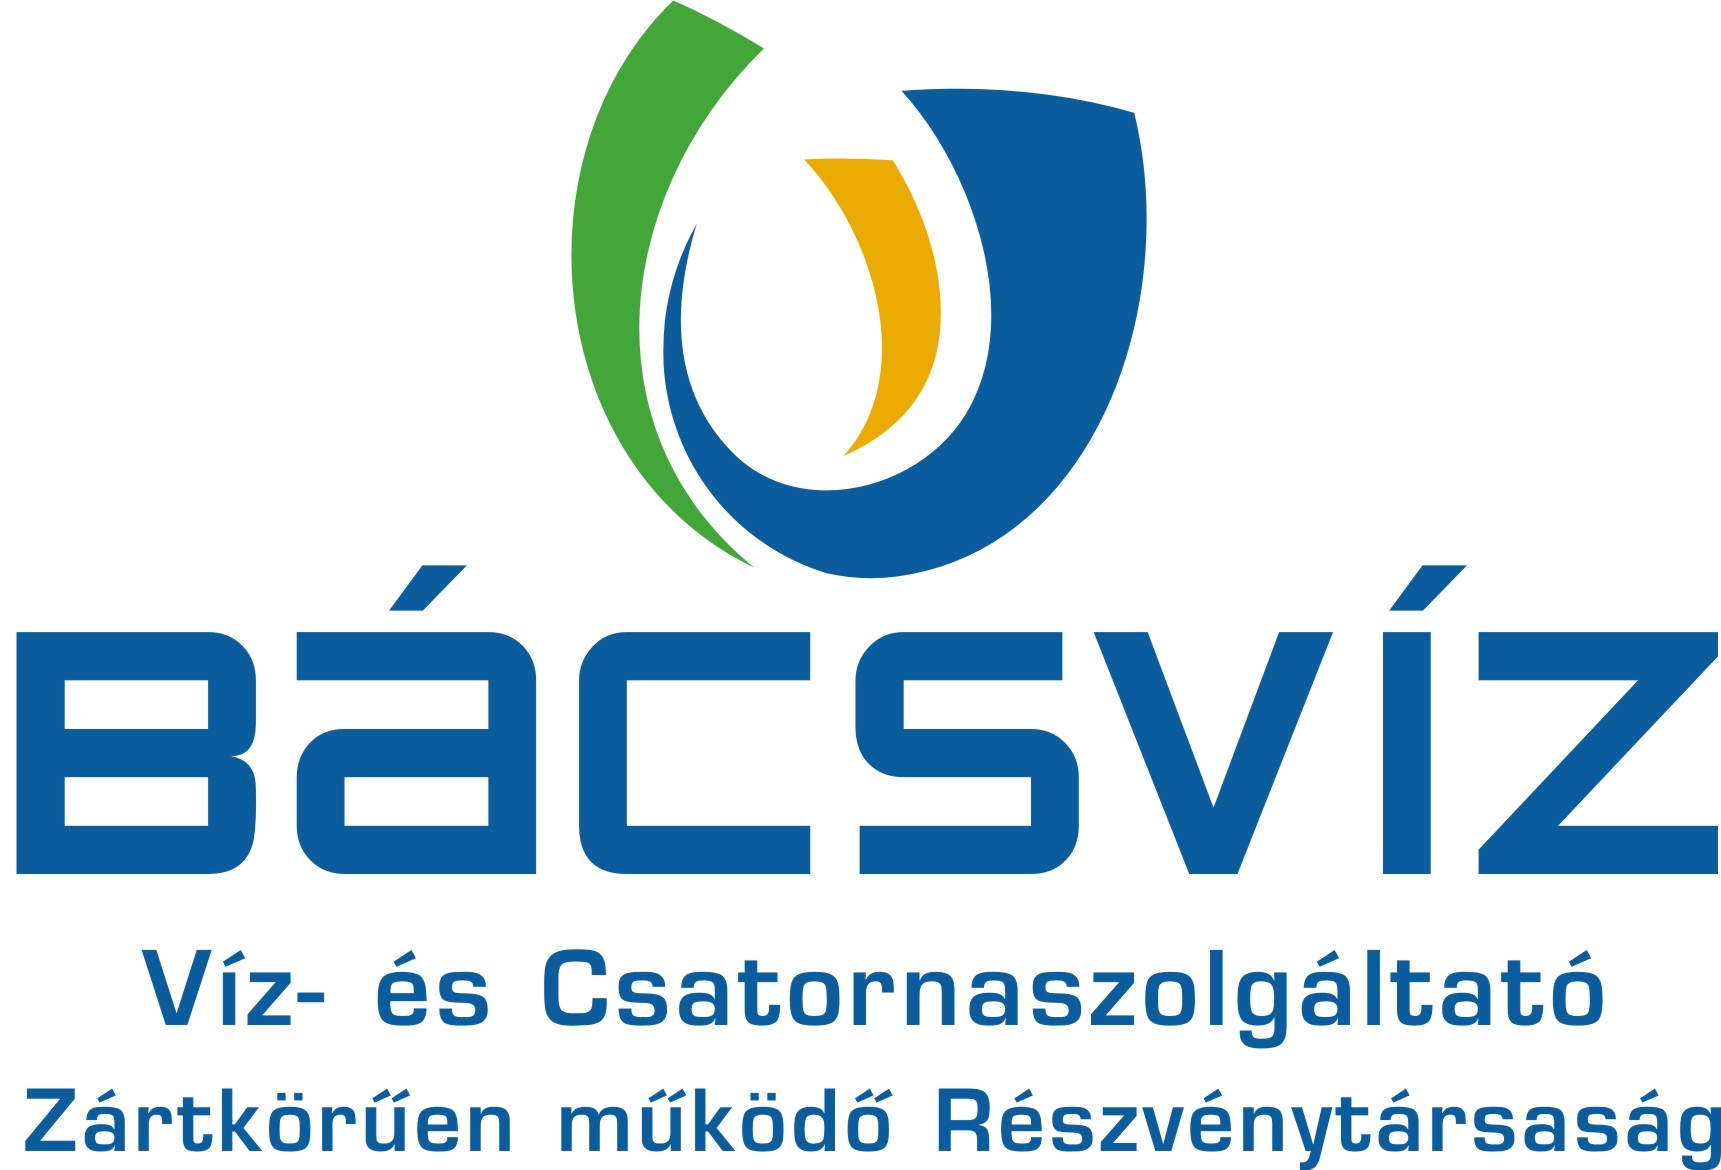 BACSVIZ logo teljes sz veggel